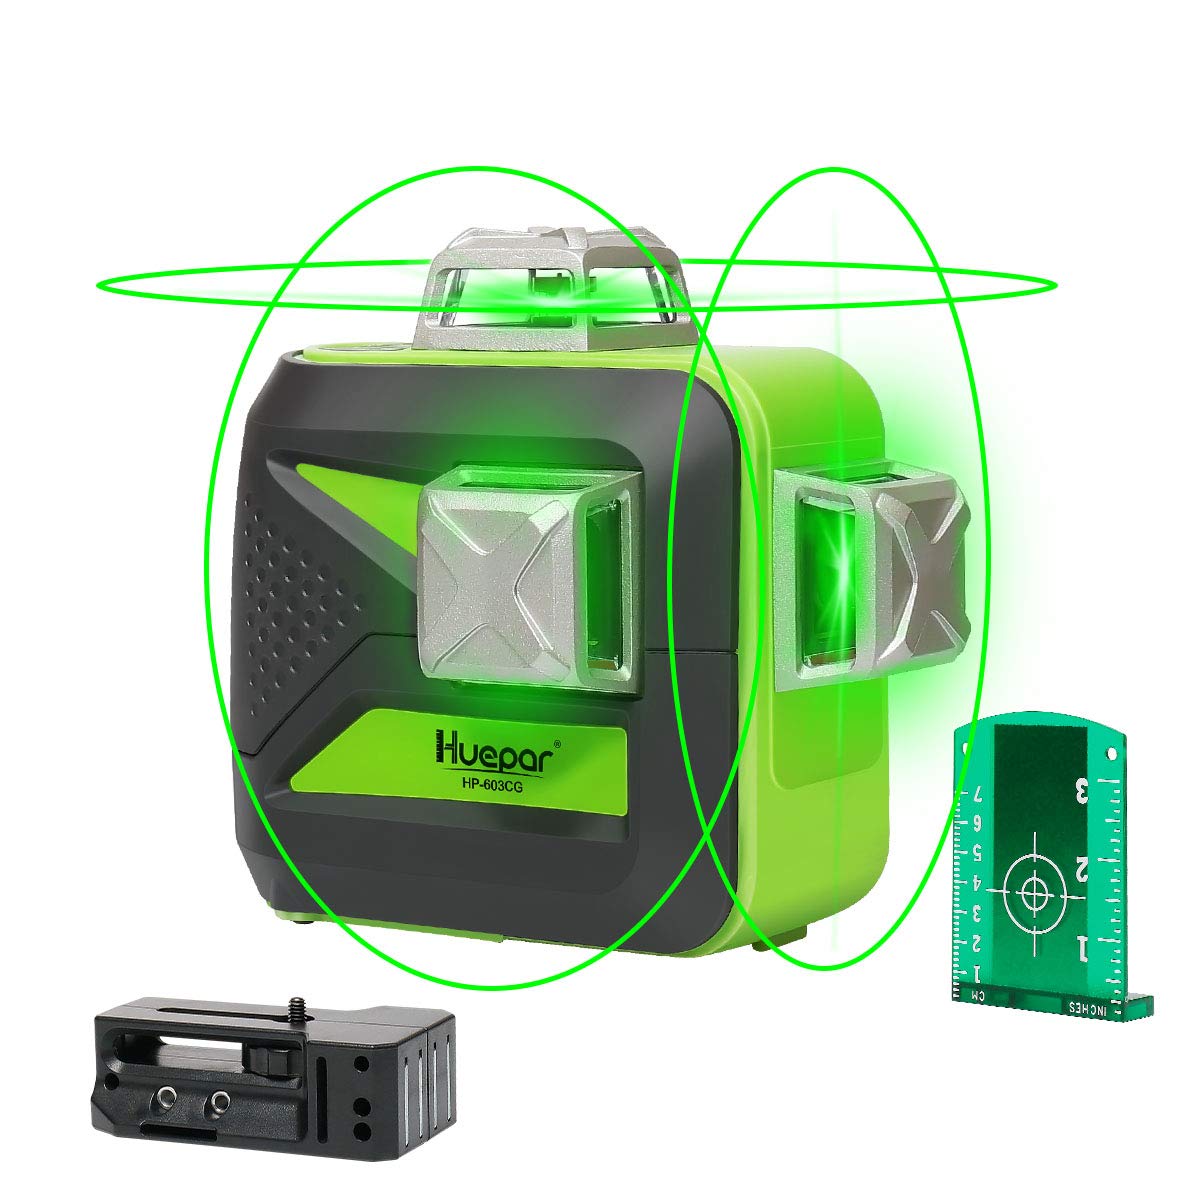 Nivel de láser de autonivelación de haz verde 3D Huepar Nivel 3x360 Línea cruzada Láser y alineación de tres planos Base pivotante magnética 603CG